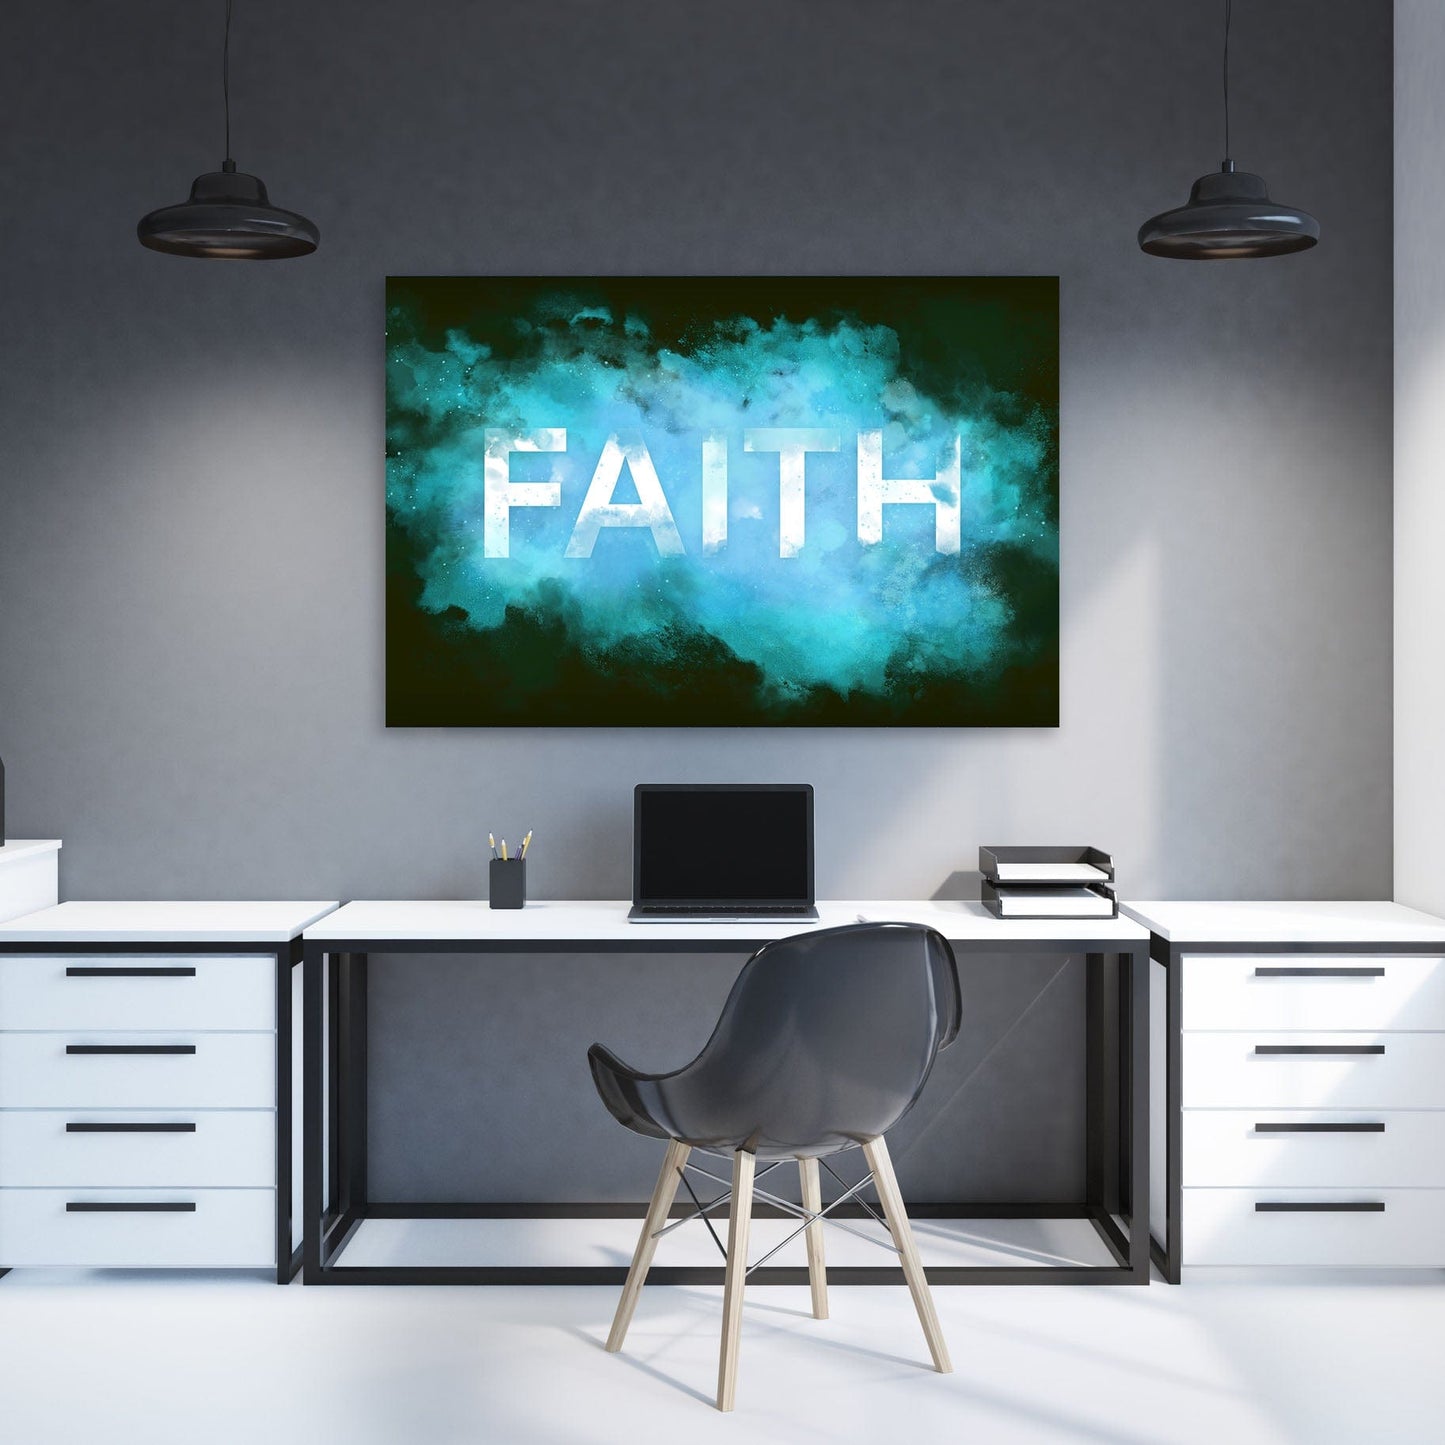 FAITH Smoke Wall Art | Inspirational Wall Art Motivational Wall Art Quotes Office Art | ImpaktMaker Exclusive Canvas Art Landscape